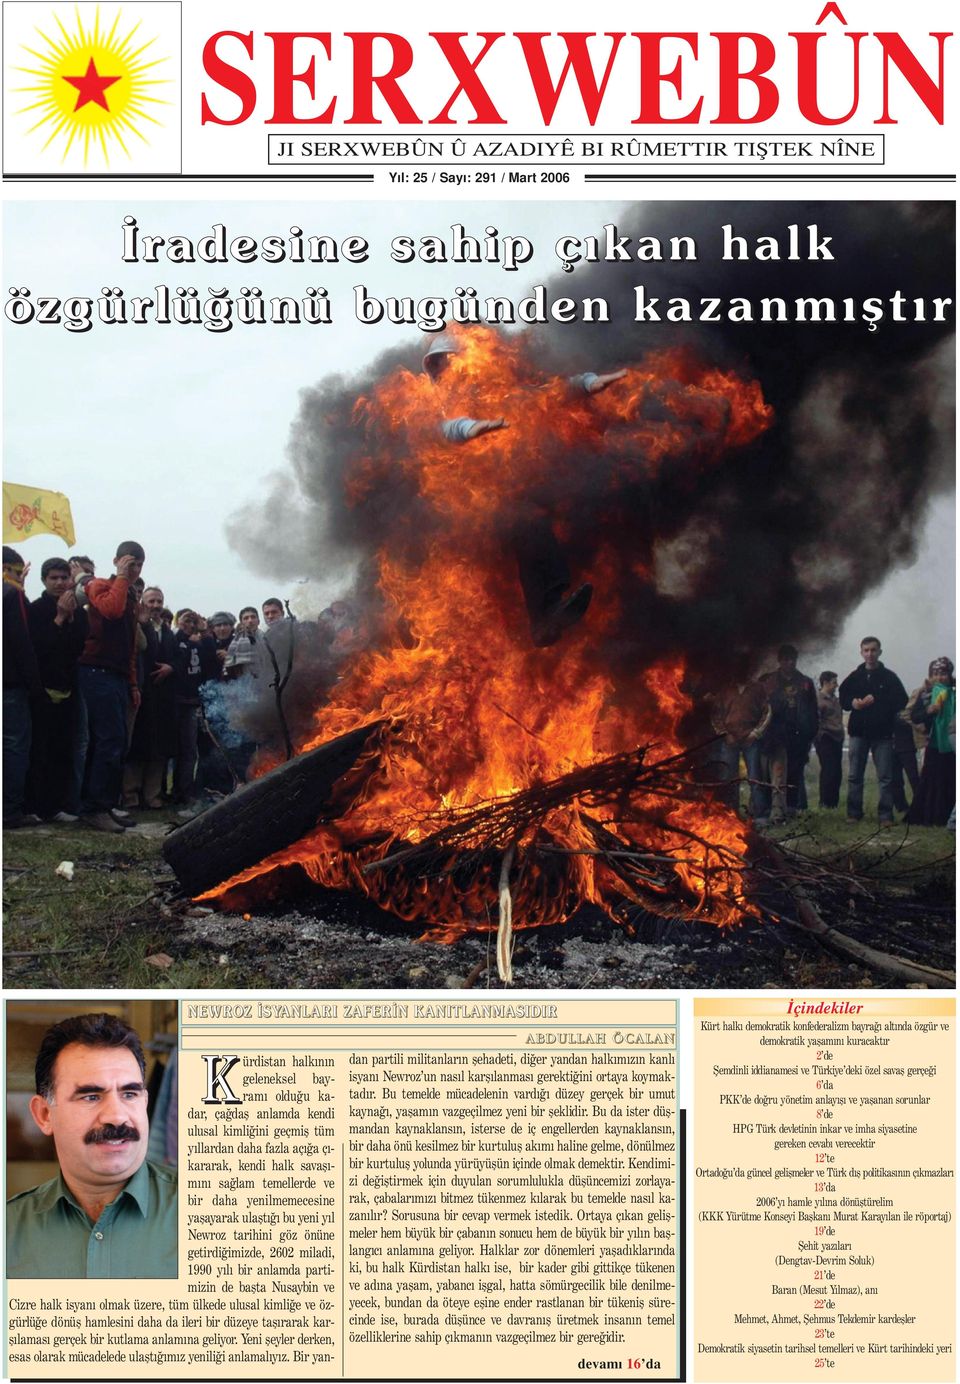 savaﬂ m n sa lam temellerde ve bir daha yenilmemecesine yaﬂayarak ulaﬂt bu yeni y l Newroz tarihini göz önüne getirdi imizde, 2602 miladi, 1990 y l bir anlamda partimizin de baﬂta Nusaybin ve Cizre